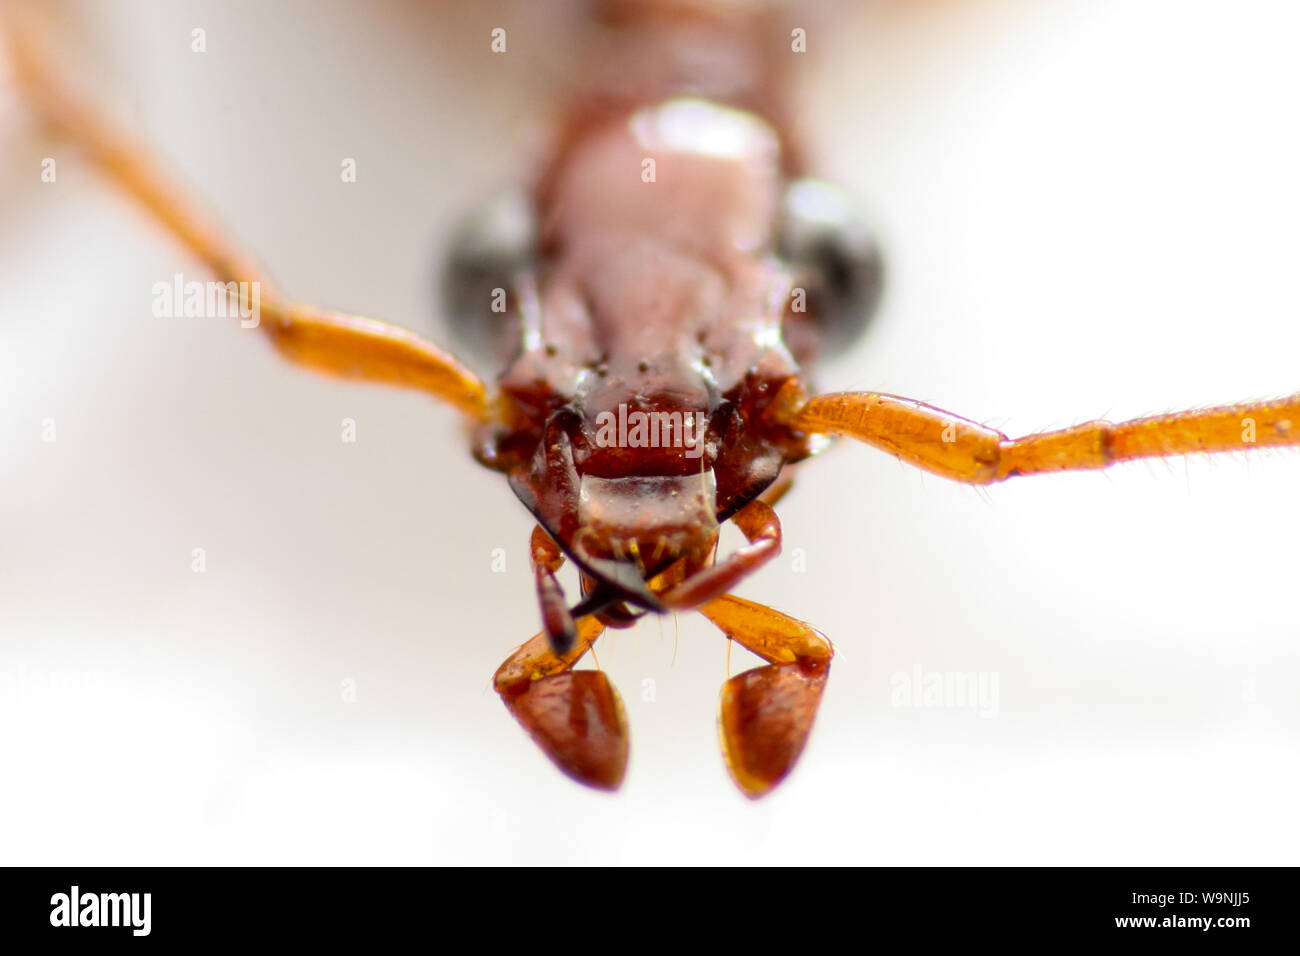 Insectes épinglés, macro d'un laboratoire d'entomologie coléoptères préservés pour la taxonomie (Coleoptera, Carabidae), montre la tête de l'insecte en détail Banque D'Images